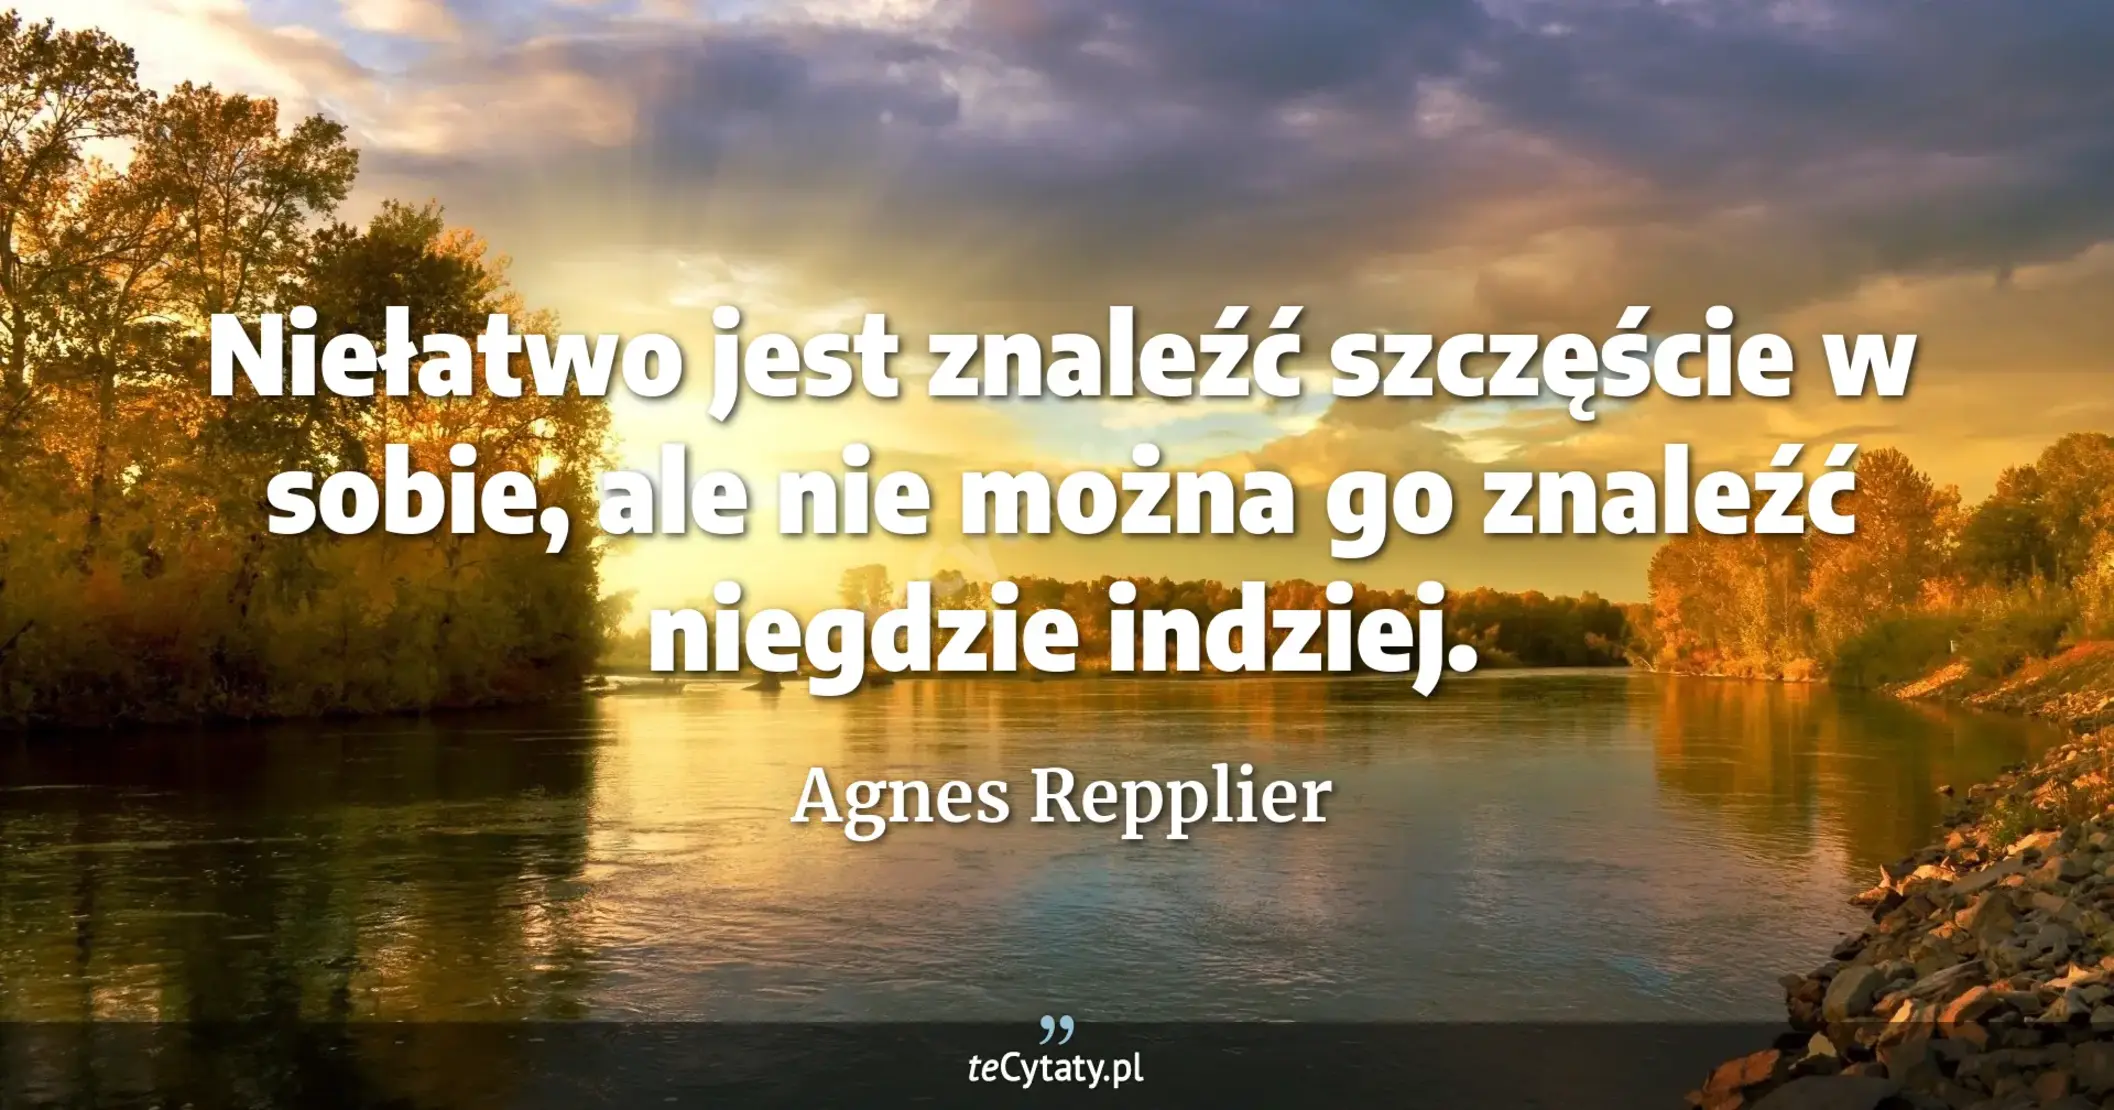 Niełatwo jest znaleźć szczęście w sobie, ale nie można go znaleźć niegdzie indziej. - Agnes Repplier